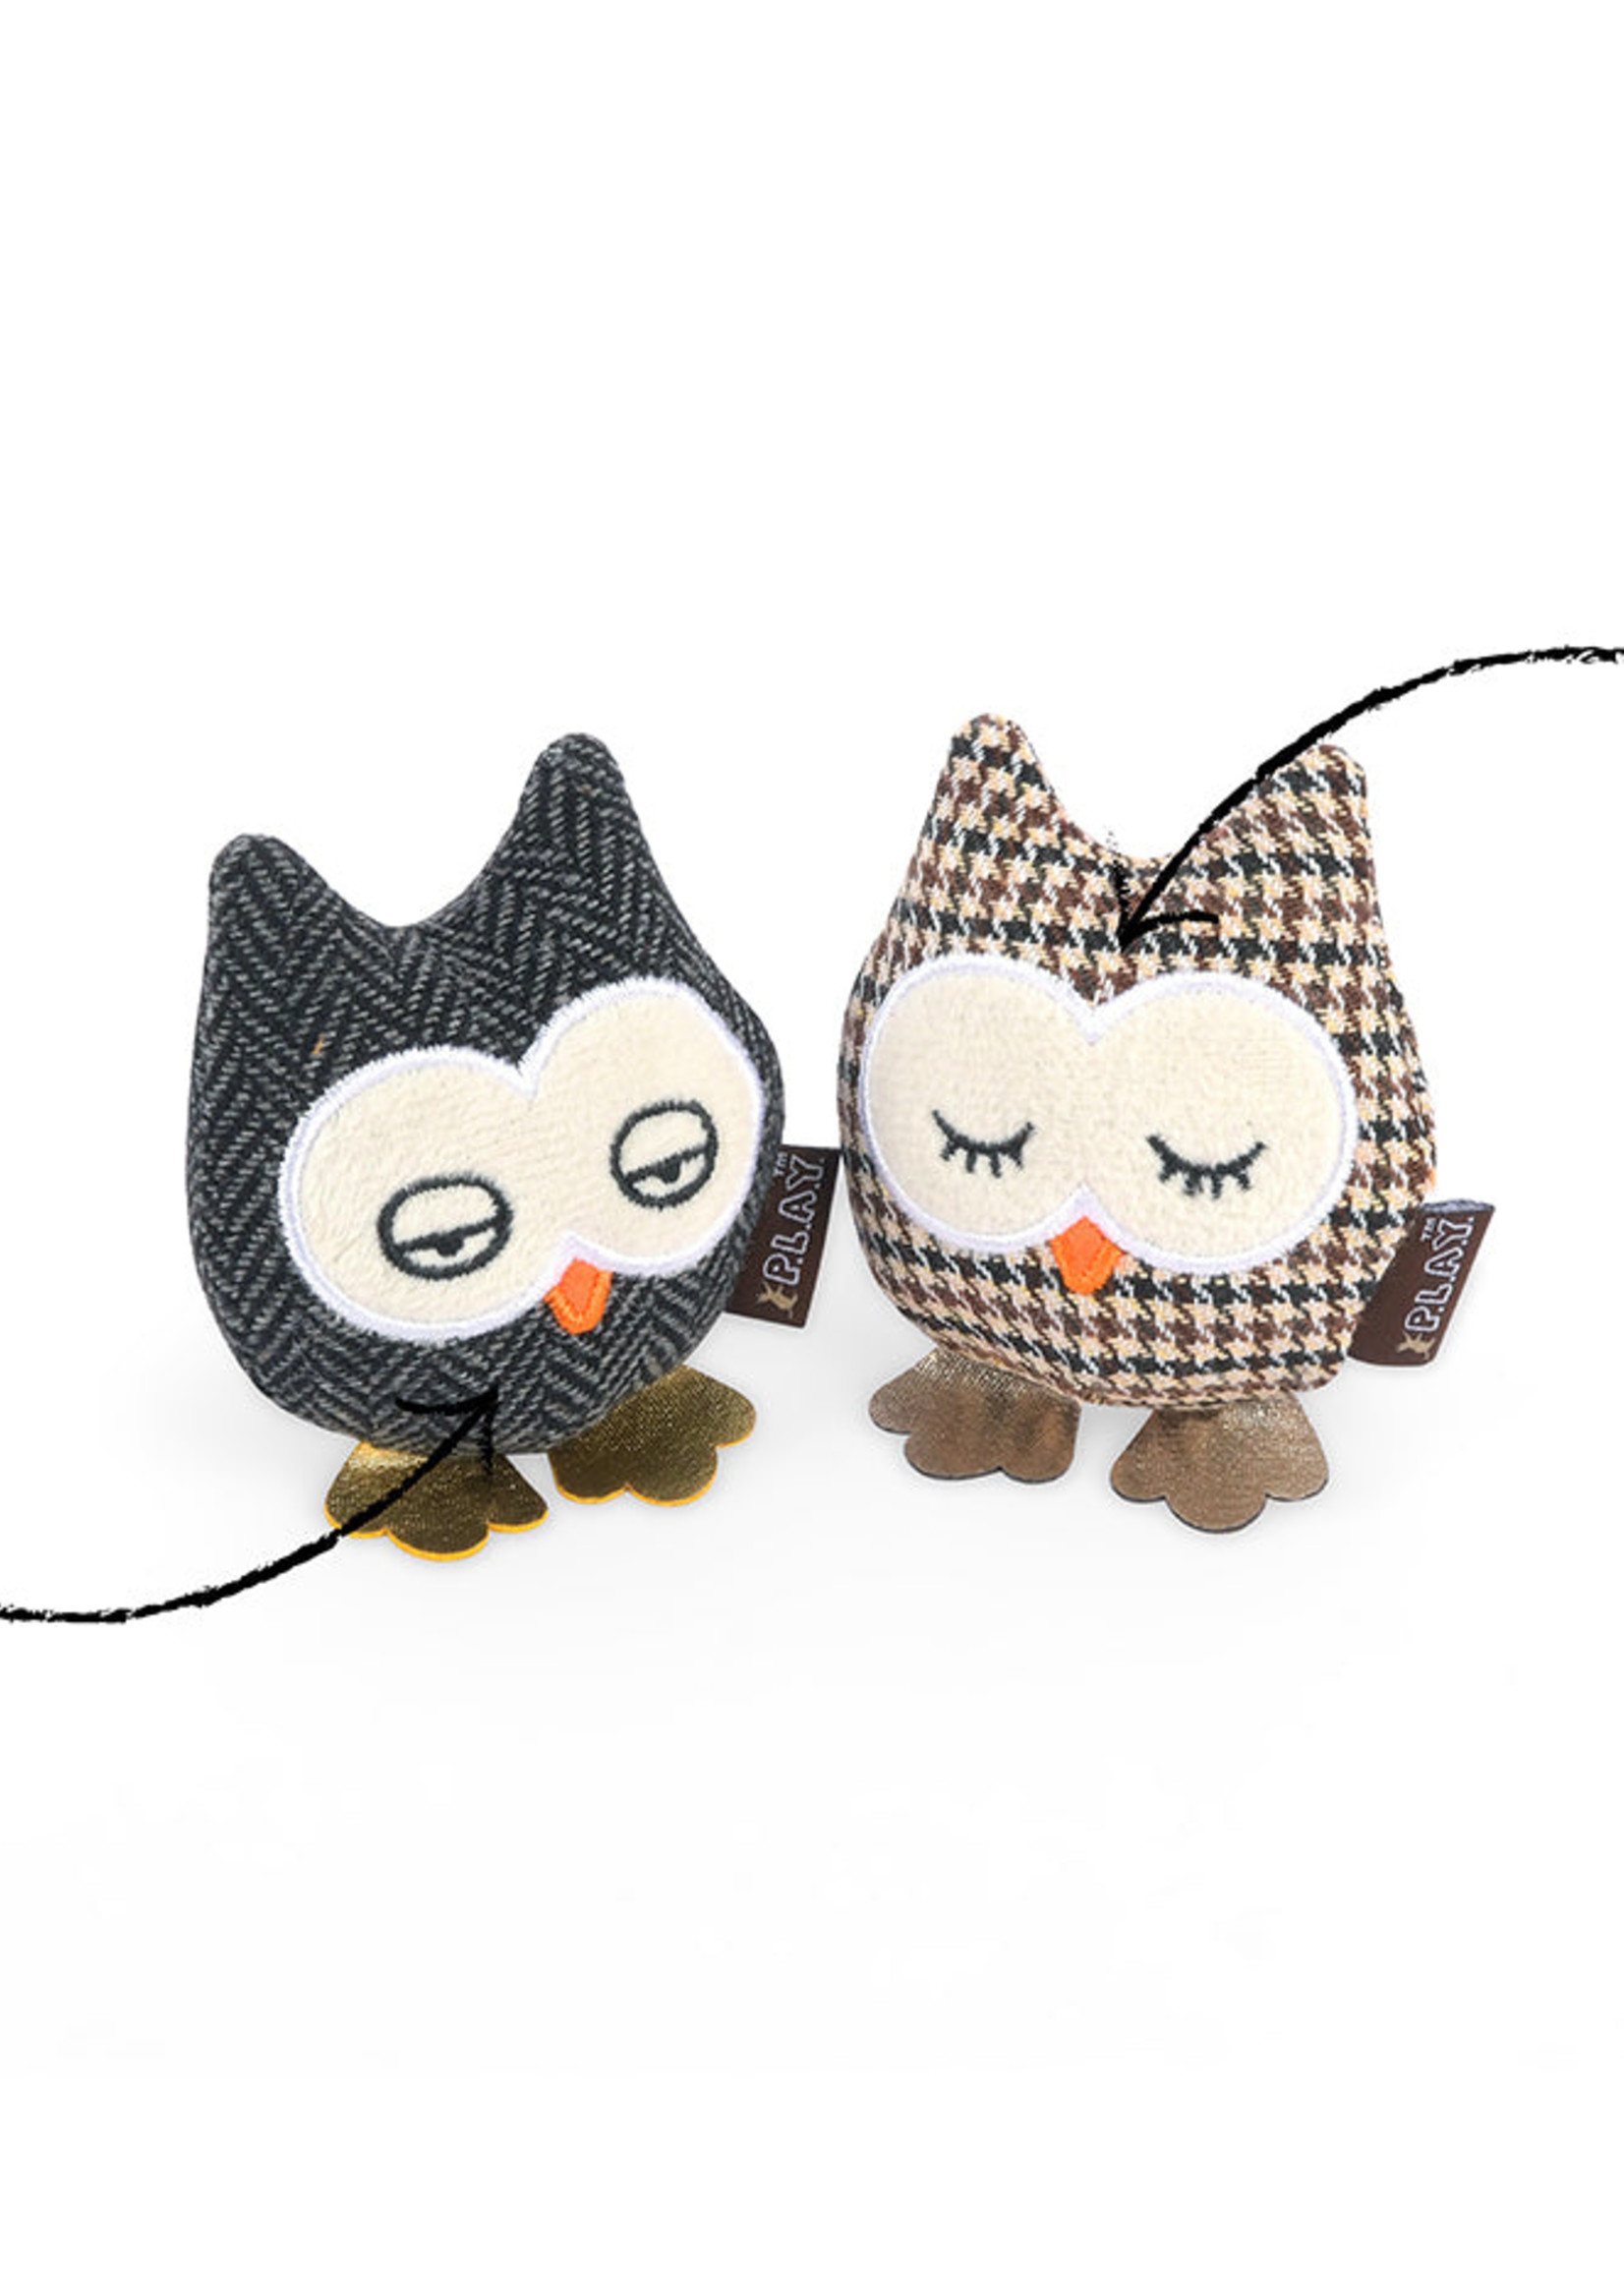 P.L.A.Y. Feline Frenzy Catnip Toy - Hooti-ful Owls